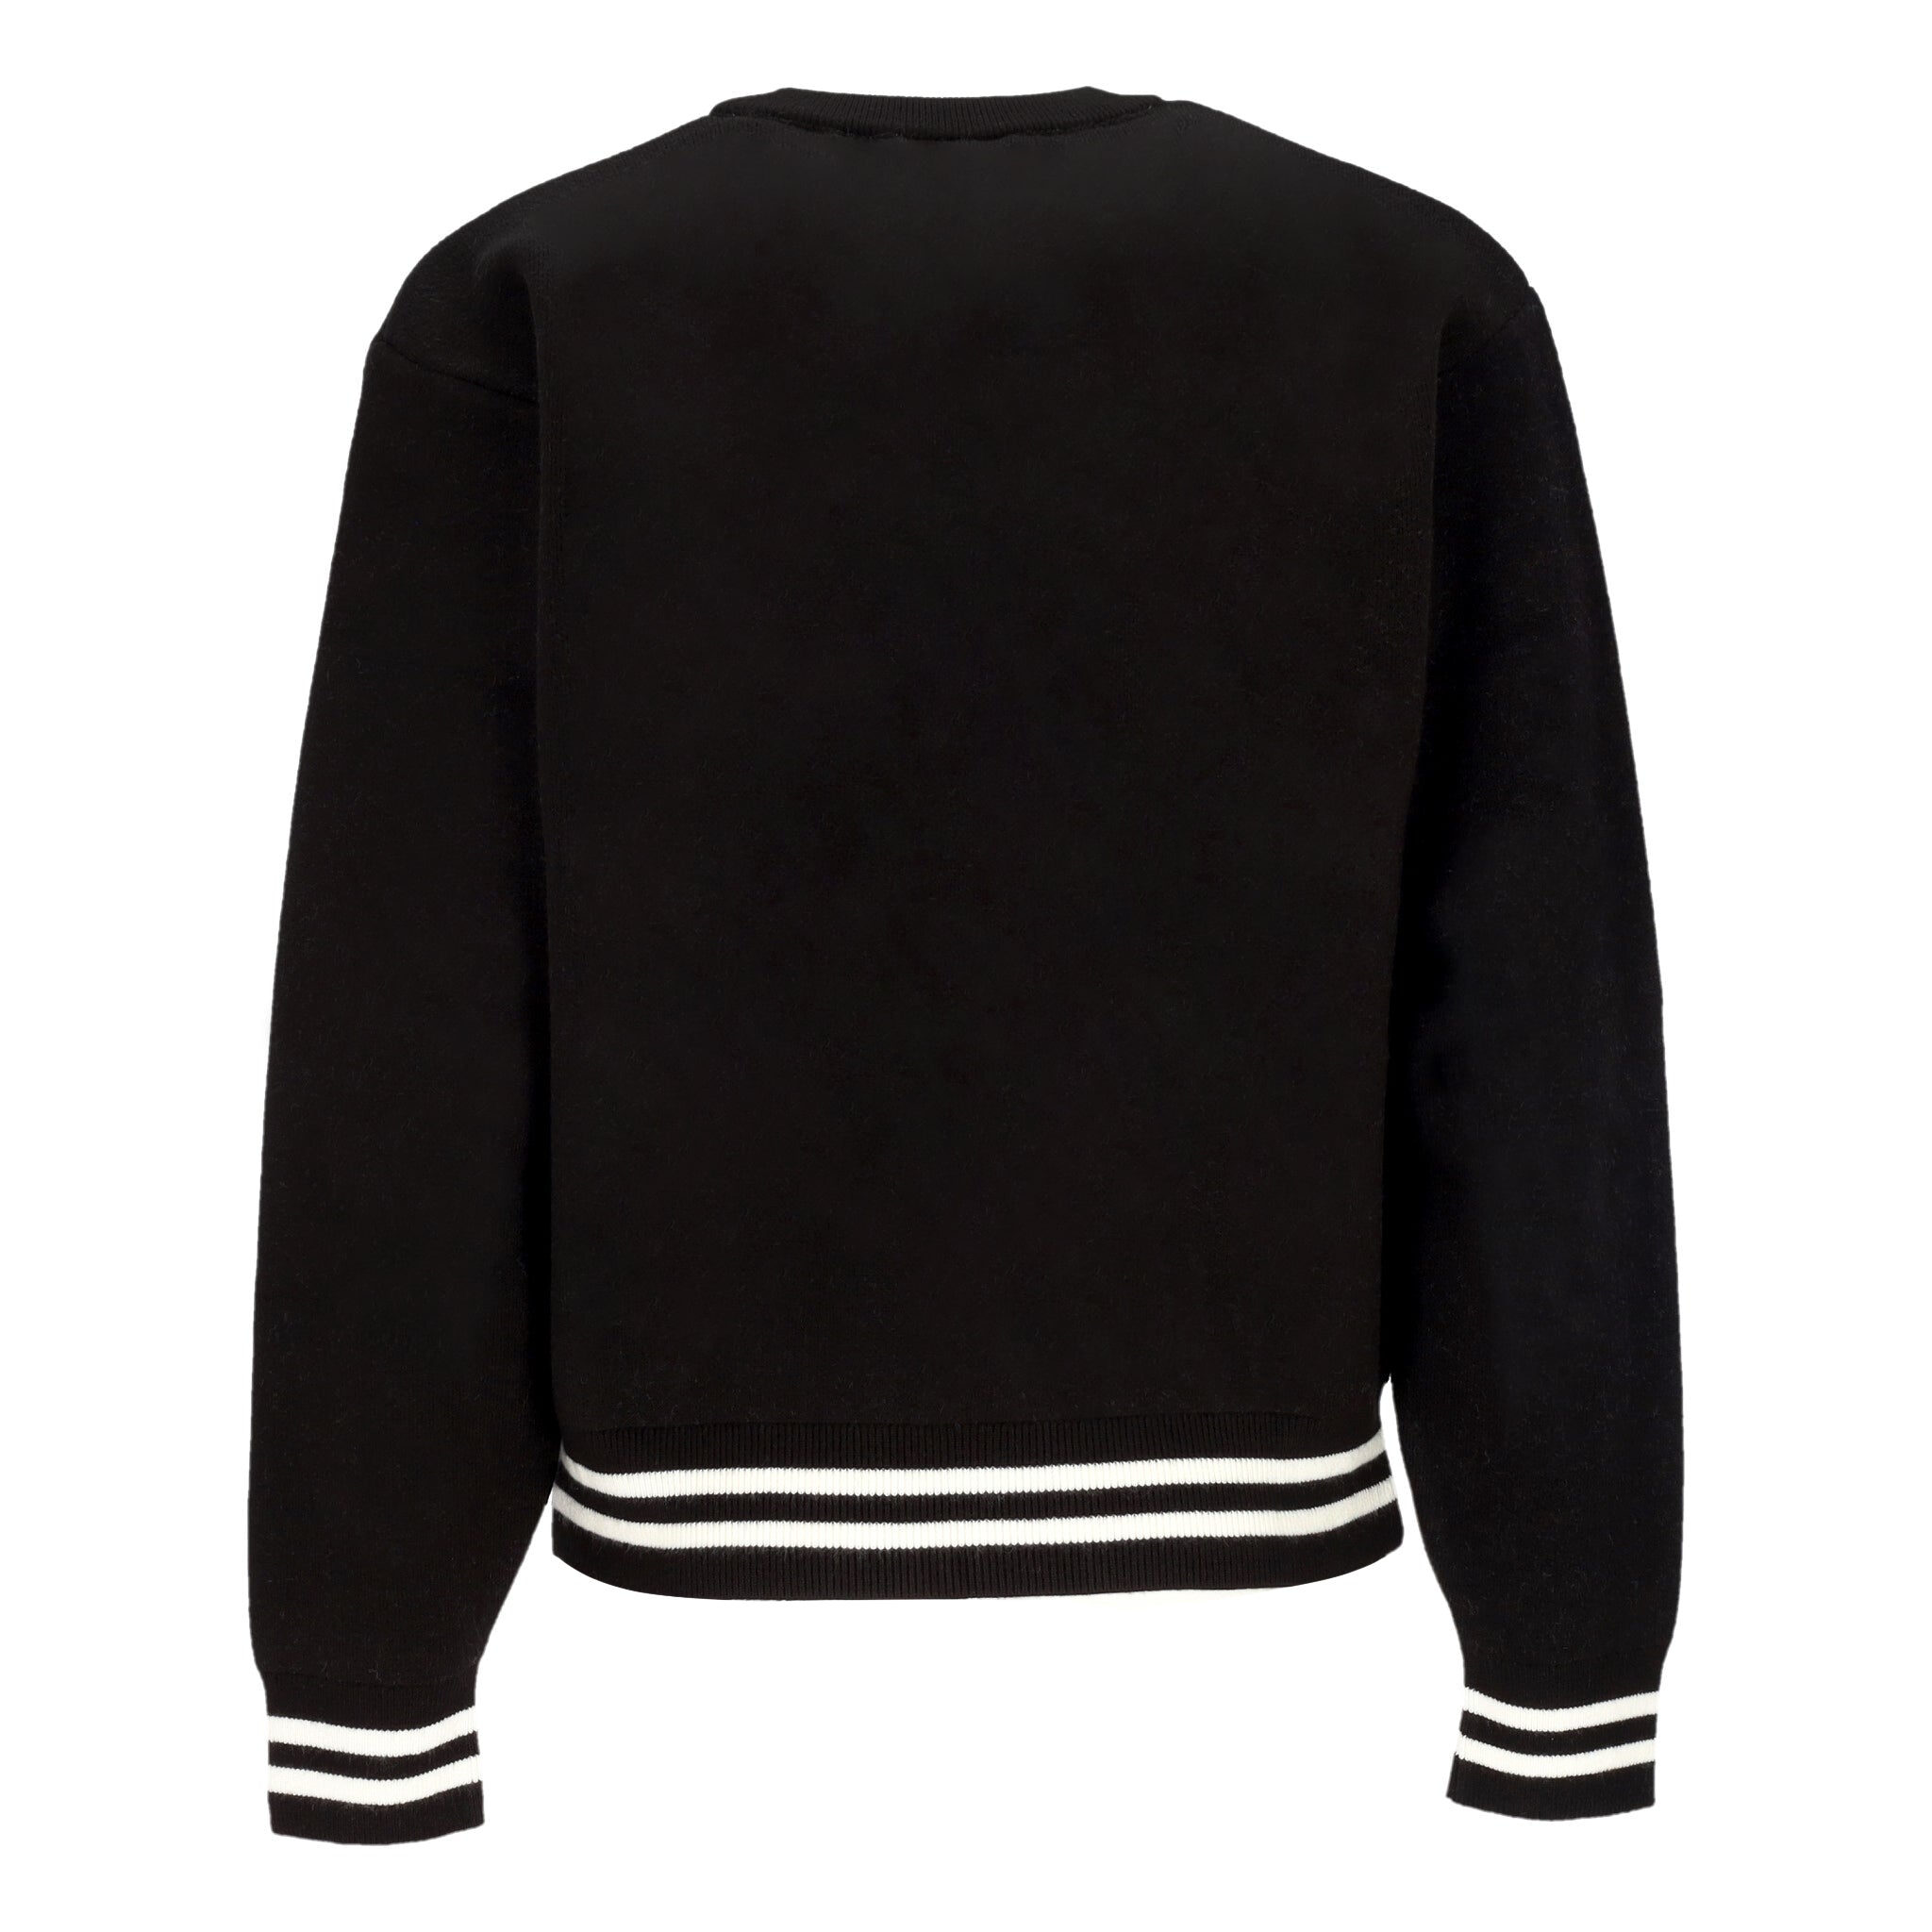 Maglione Uomo Onyx Sweater Black/wax I033562.K02